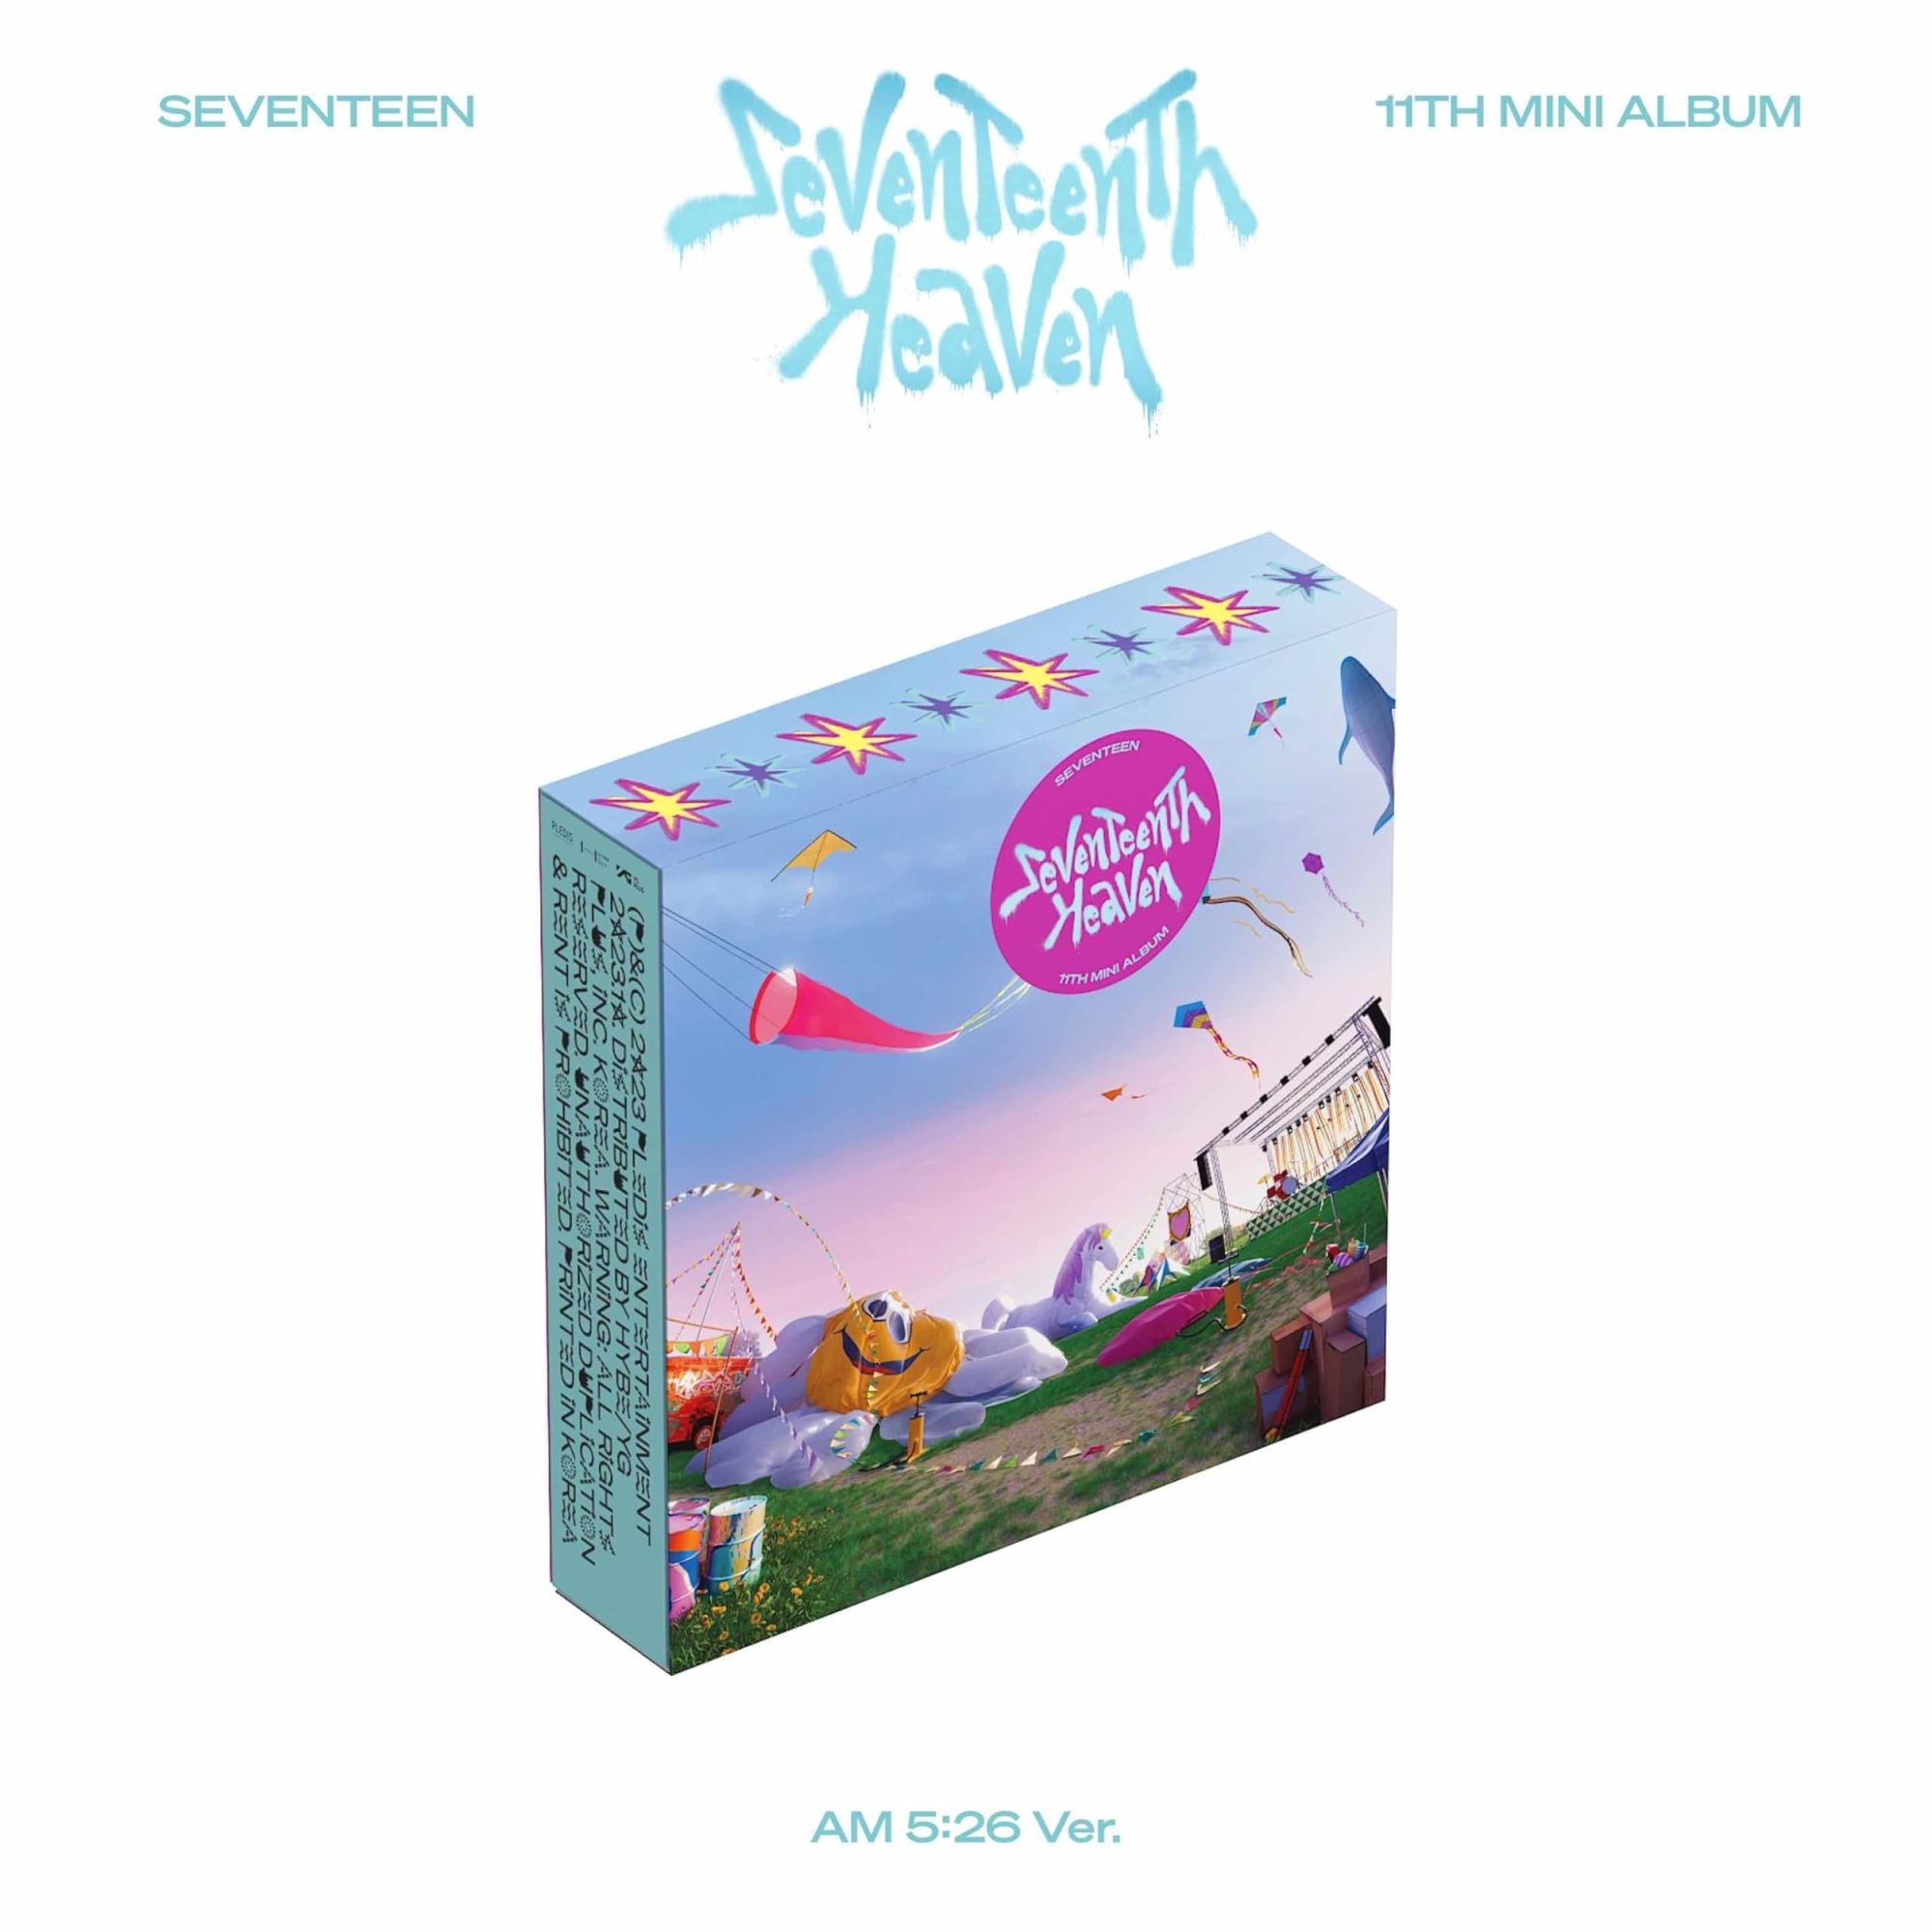 Audio Cd Seventeen - 11Th Mini Album Seventeenth Heaven Am 5:26 Ver NUOVO SIGILLATO EDIZIONE DEL SUBITO DISPONIBILE